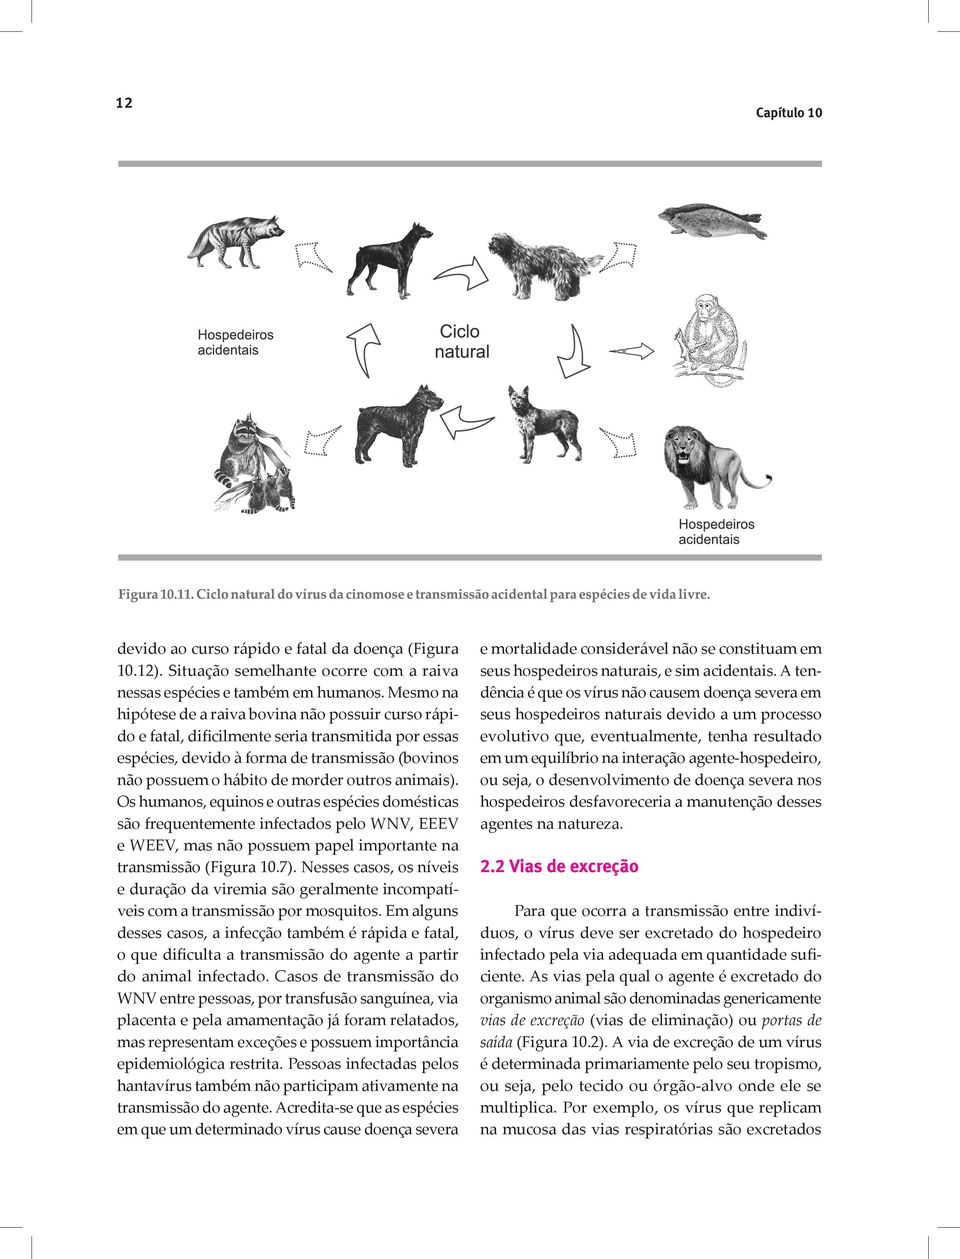 animais). Os humanos, equinos e outras espécies domésticas são frequentemente infectados pelo WNV, EEEV e WEEV, mas não possuem papel importante na transmissão (Figura 10.7).